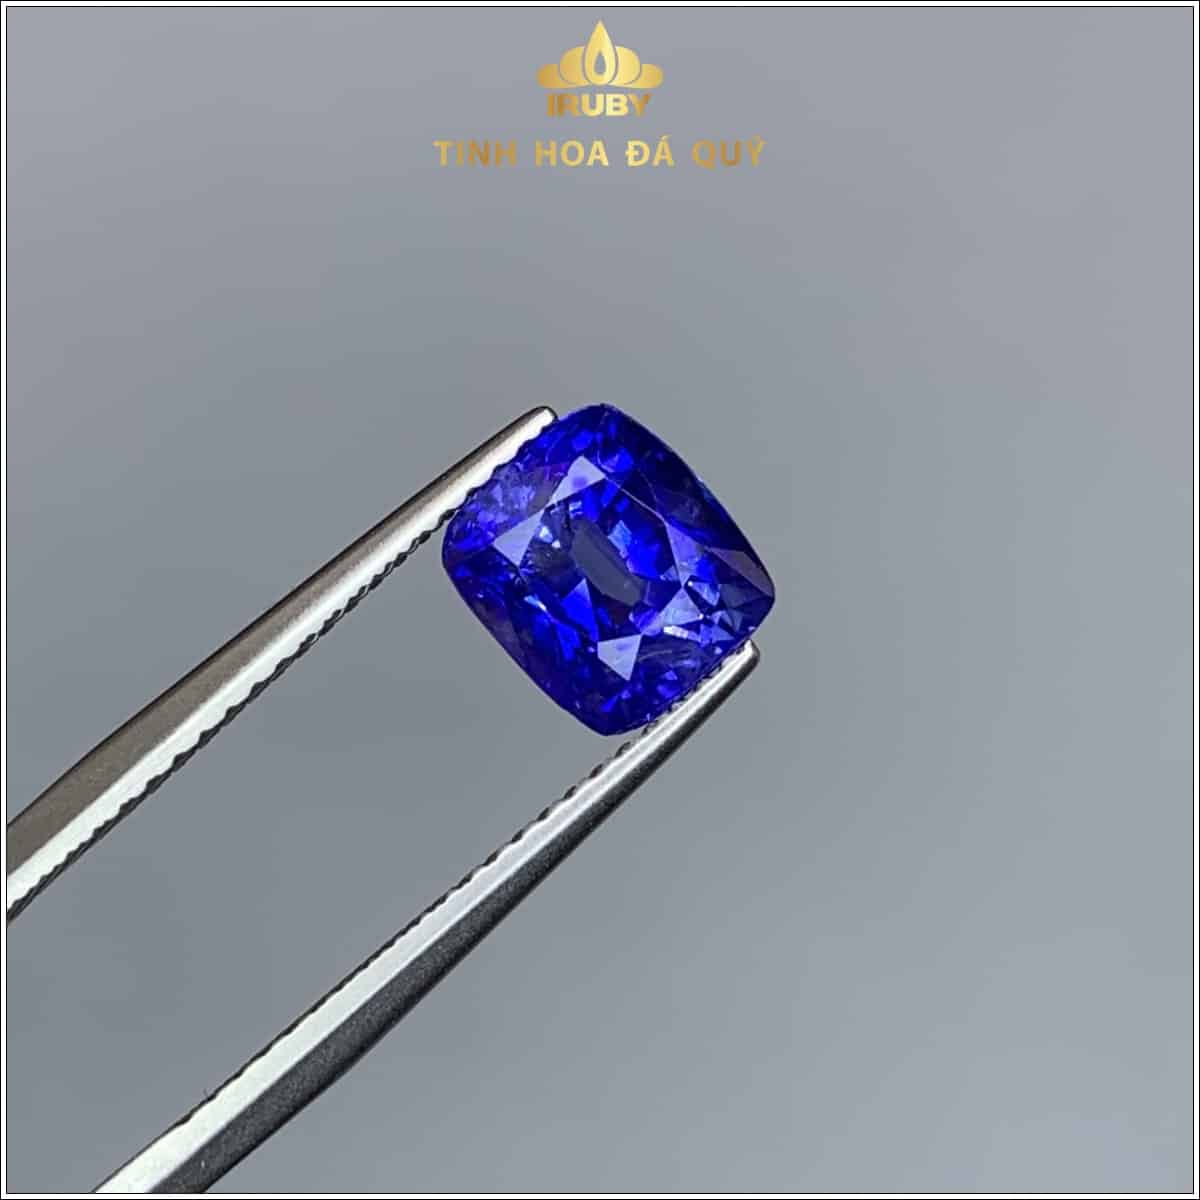 Viên Sapphire màu xanh lam hoàng gia 2,73ct - IRSP 236273 hình ảnh 1